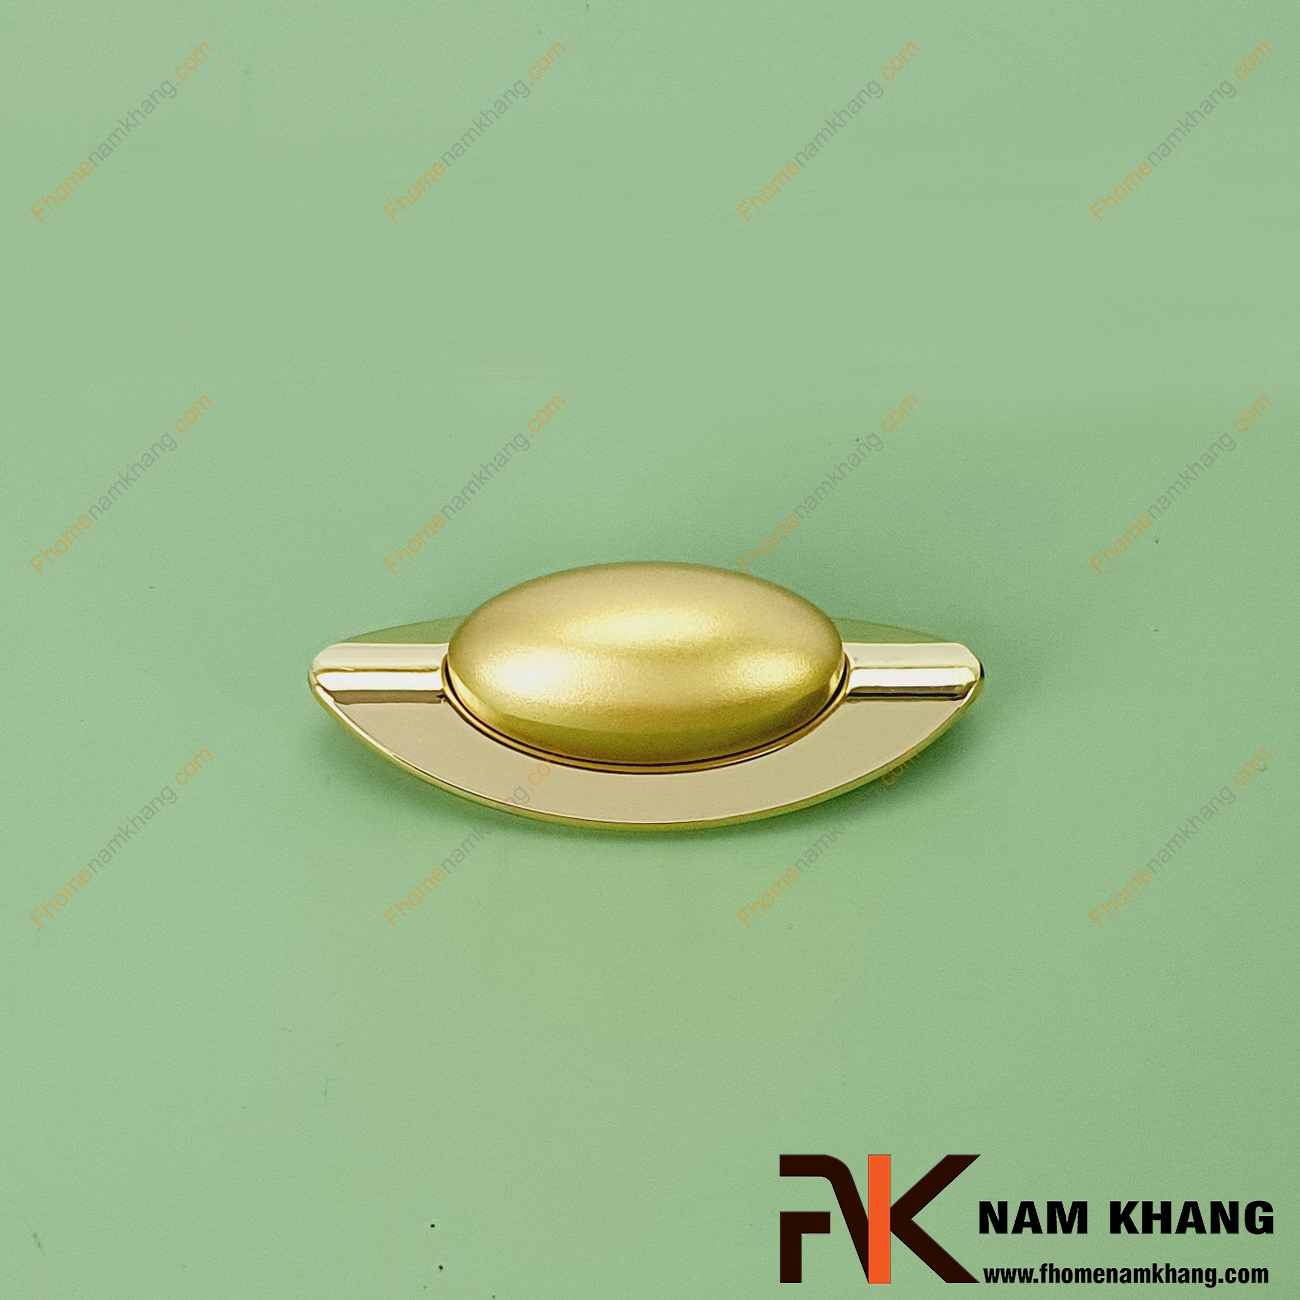 Tay nắm tủ cổ điển màu vàng mờ NK444-VM - một dạng tay nắm tủ dạng thanh ghép liền từ 2 phần khác nhau cho sự ấn tượng đặc biệt trên một sản phẩm nhỏ gọn